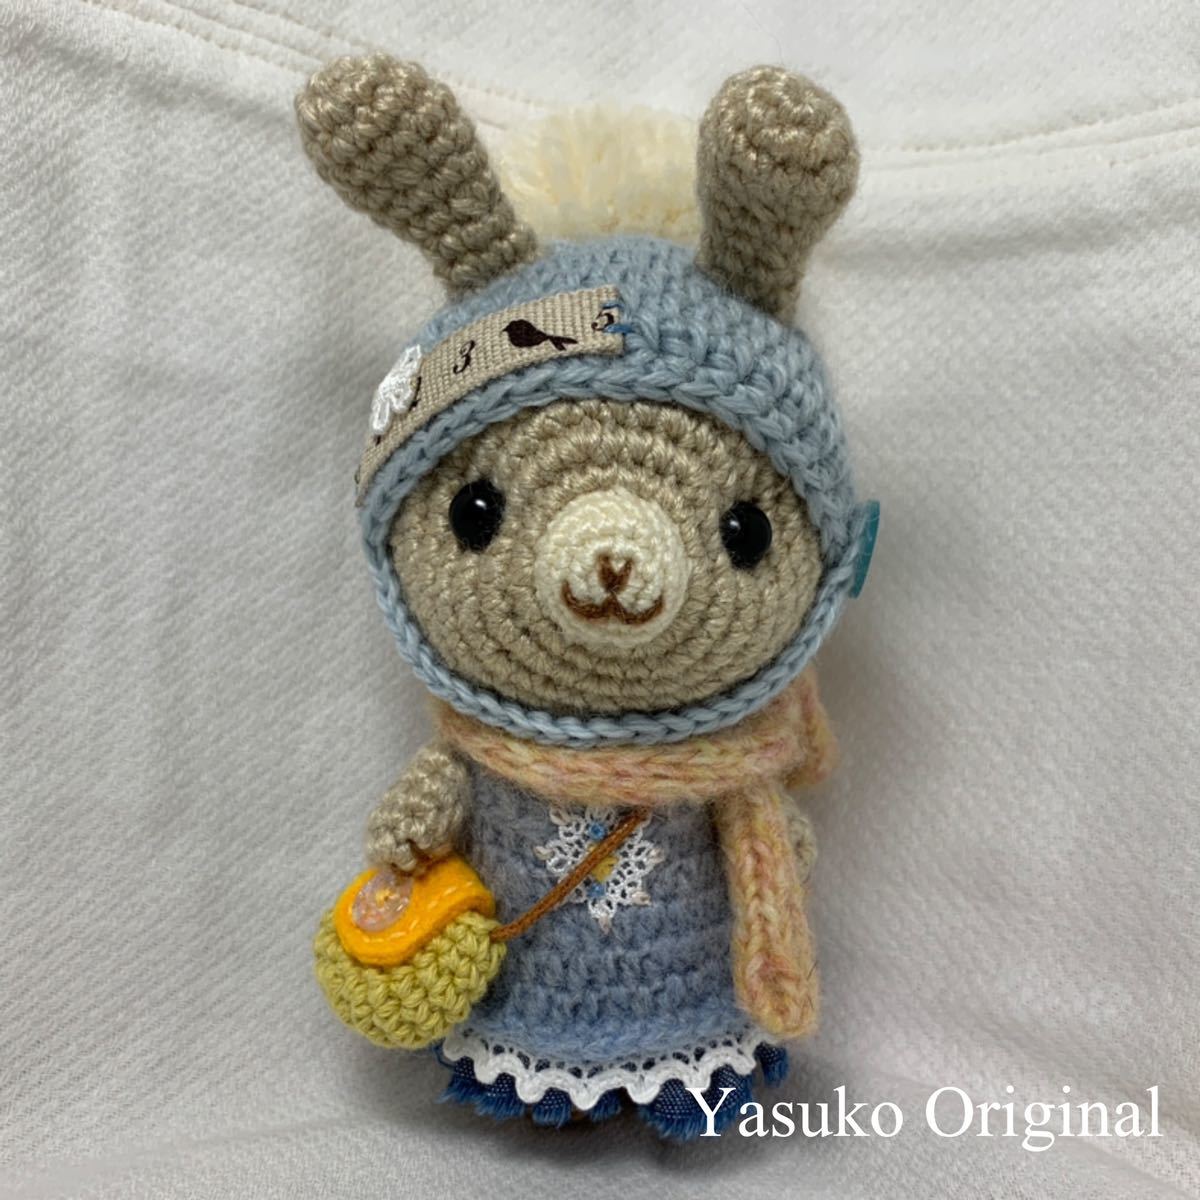 Yasuko's Amigurumi Shop ◆ Hase Nr. 3931 ◆ Kaninchen ◆ Amigurumi ◆ Handgefertigt ◆ Handgestrickt, Spielzeug, Spiel, Plüschtier, Amigurumi